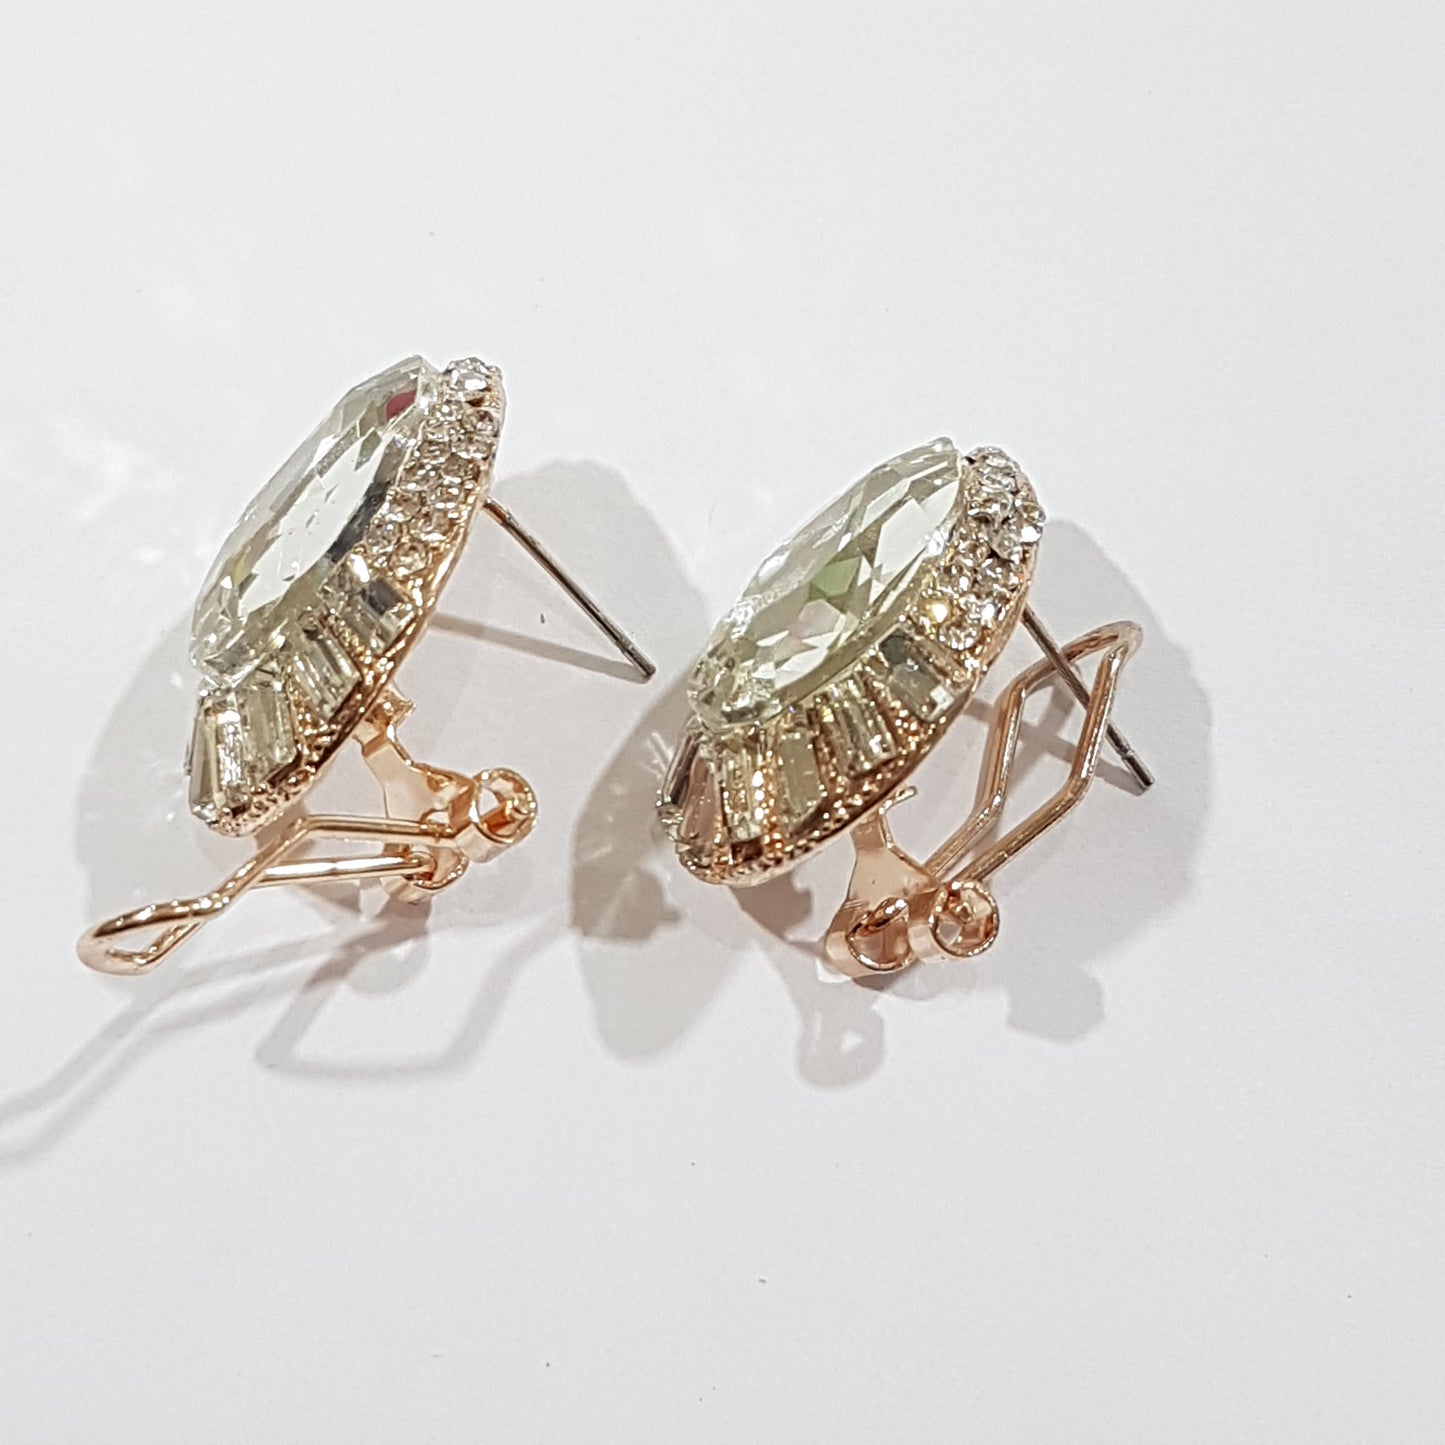 Rhinestone Oval Earrings